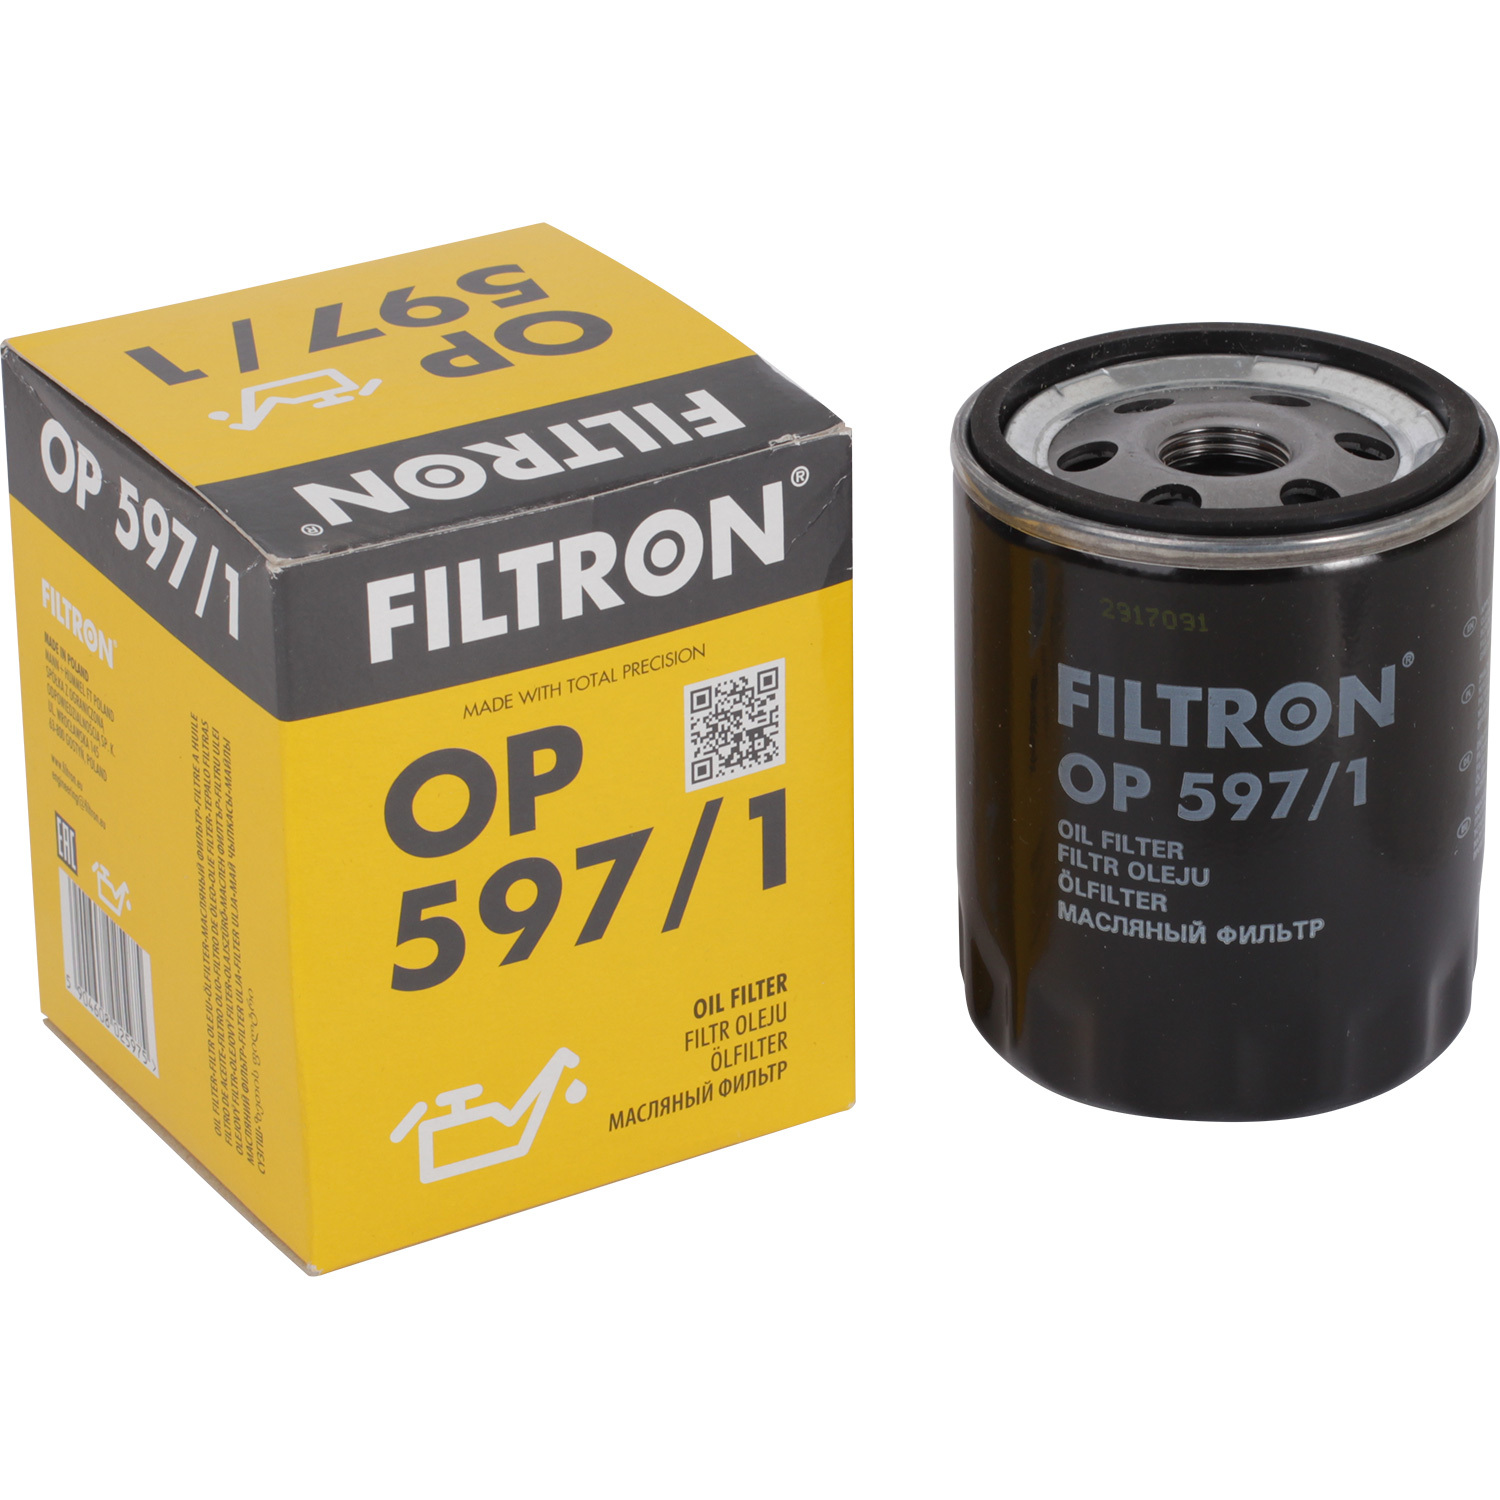 Фильтры Filtron Фильтр масляный Filtron OP5971 фильтры filtron фильтр масляный filtron op5201